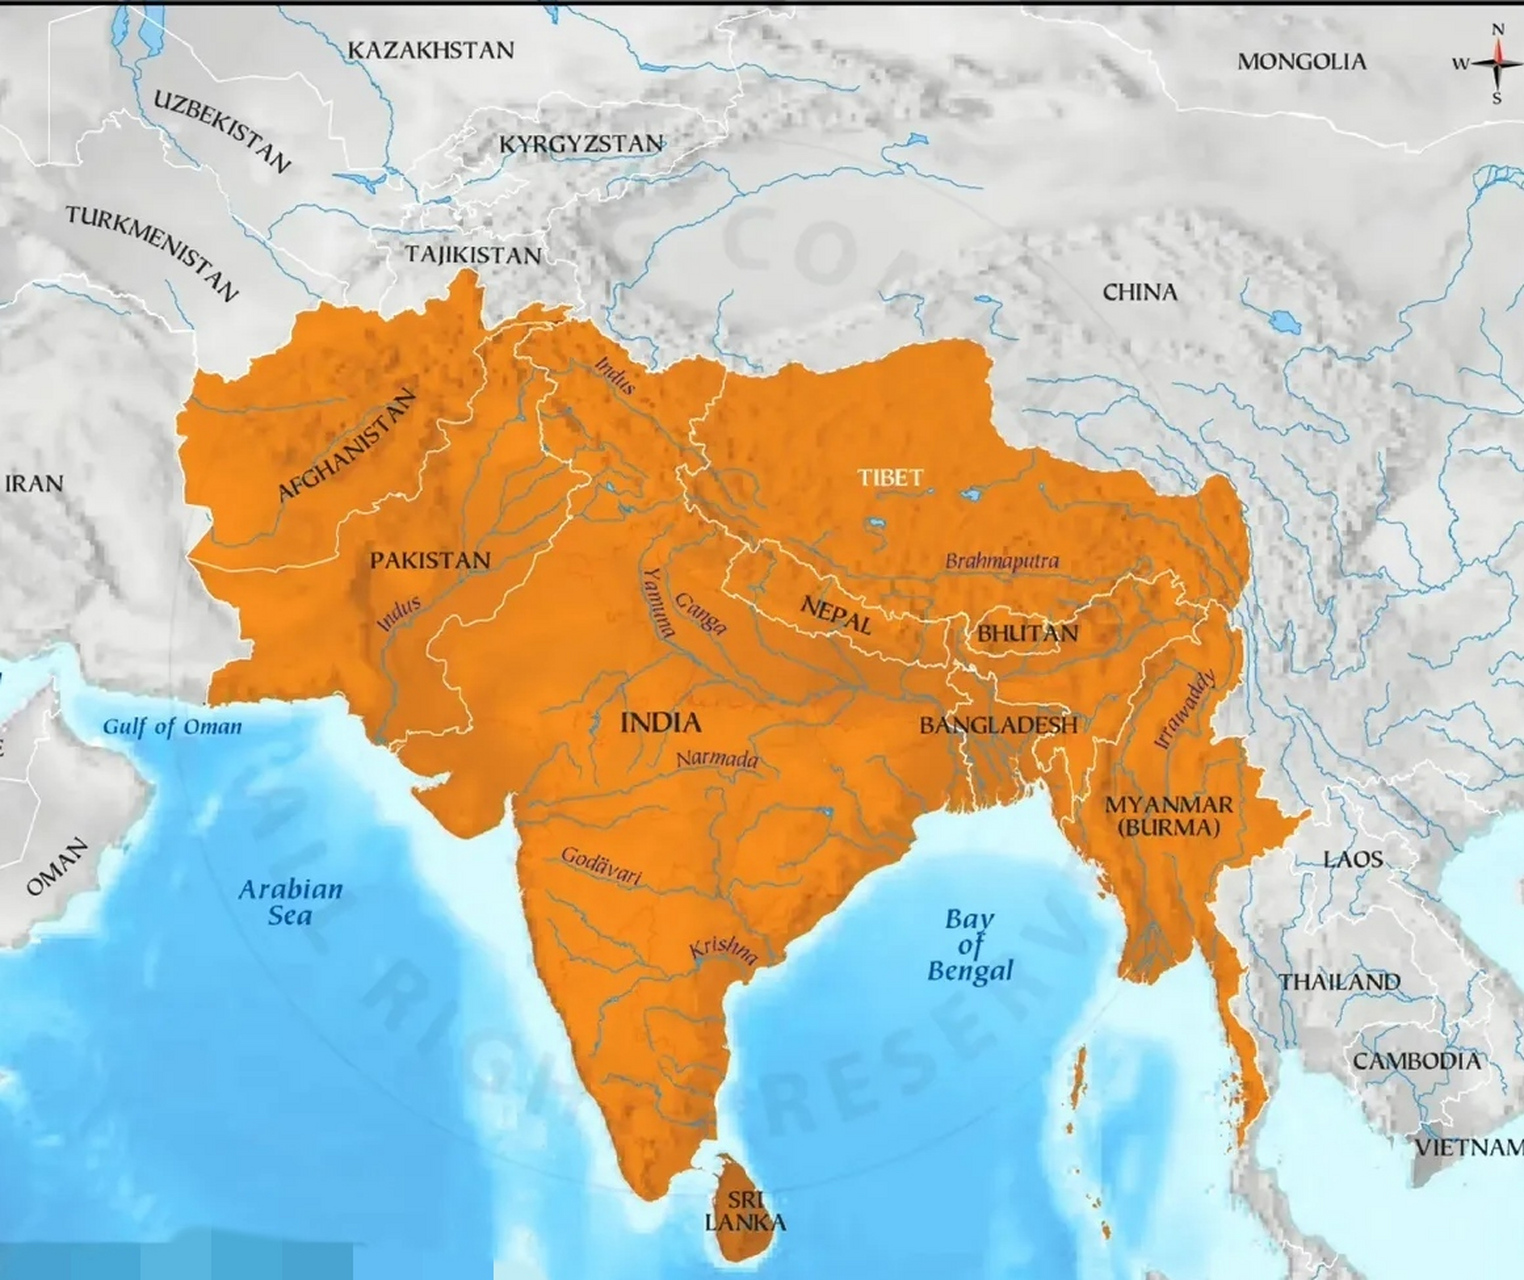 印度的心中的大印度联邦图,看来野心真是不小,在62年被我国自卫反击战